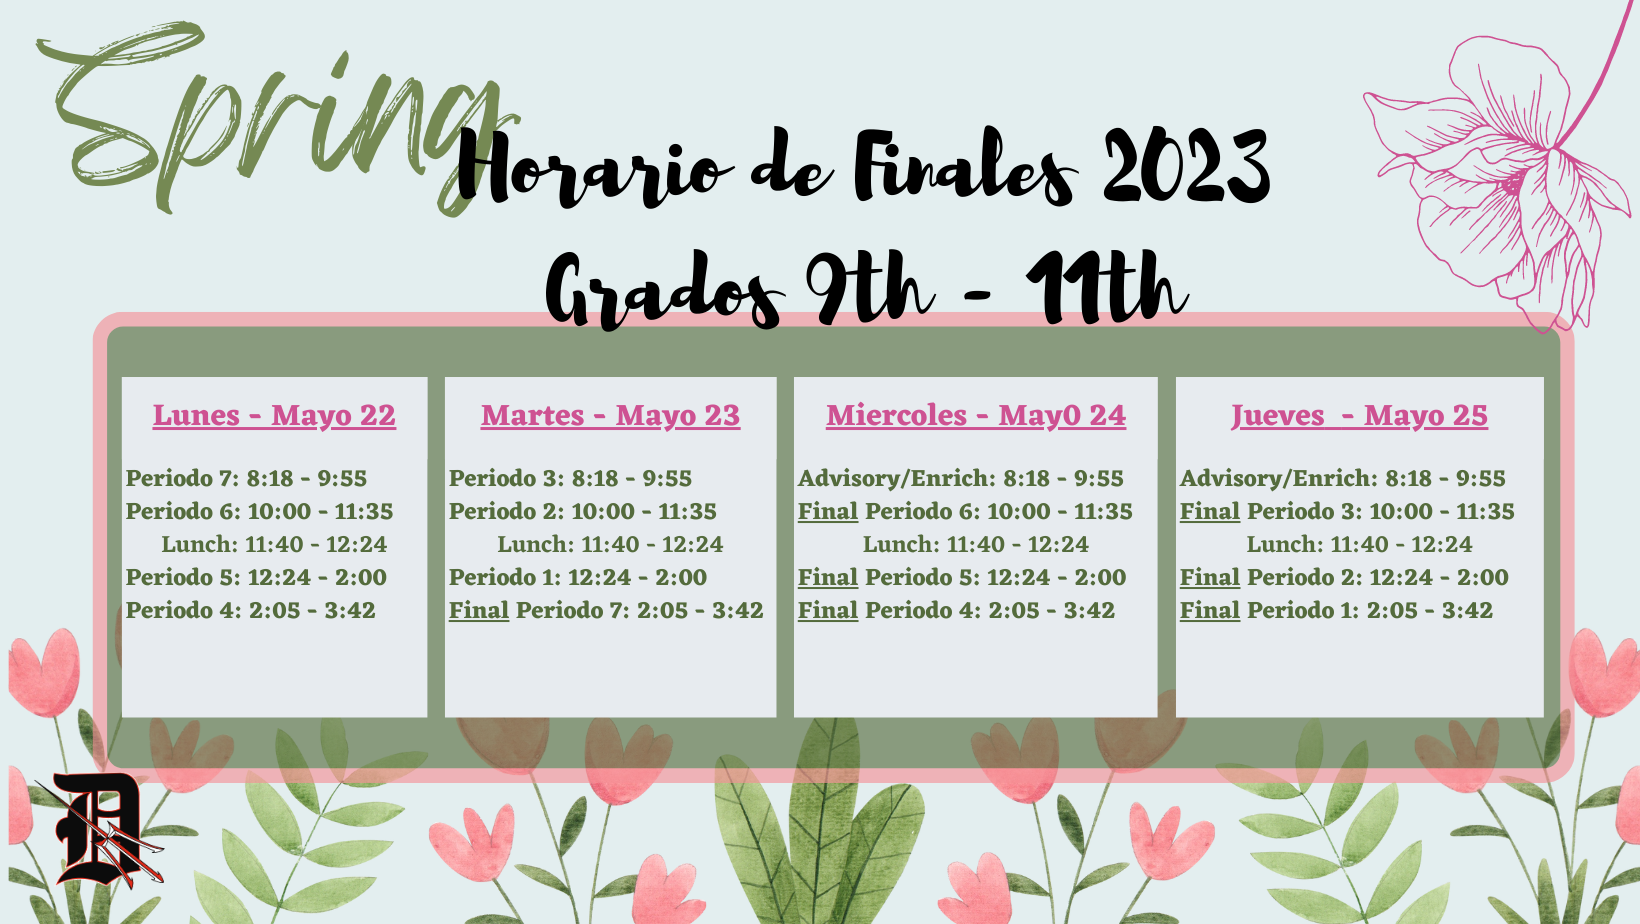 Spanish Version Final Schedule